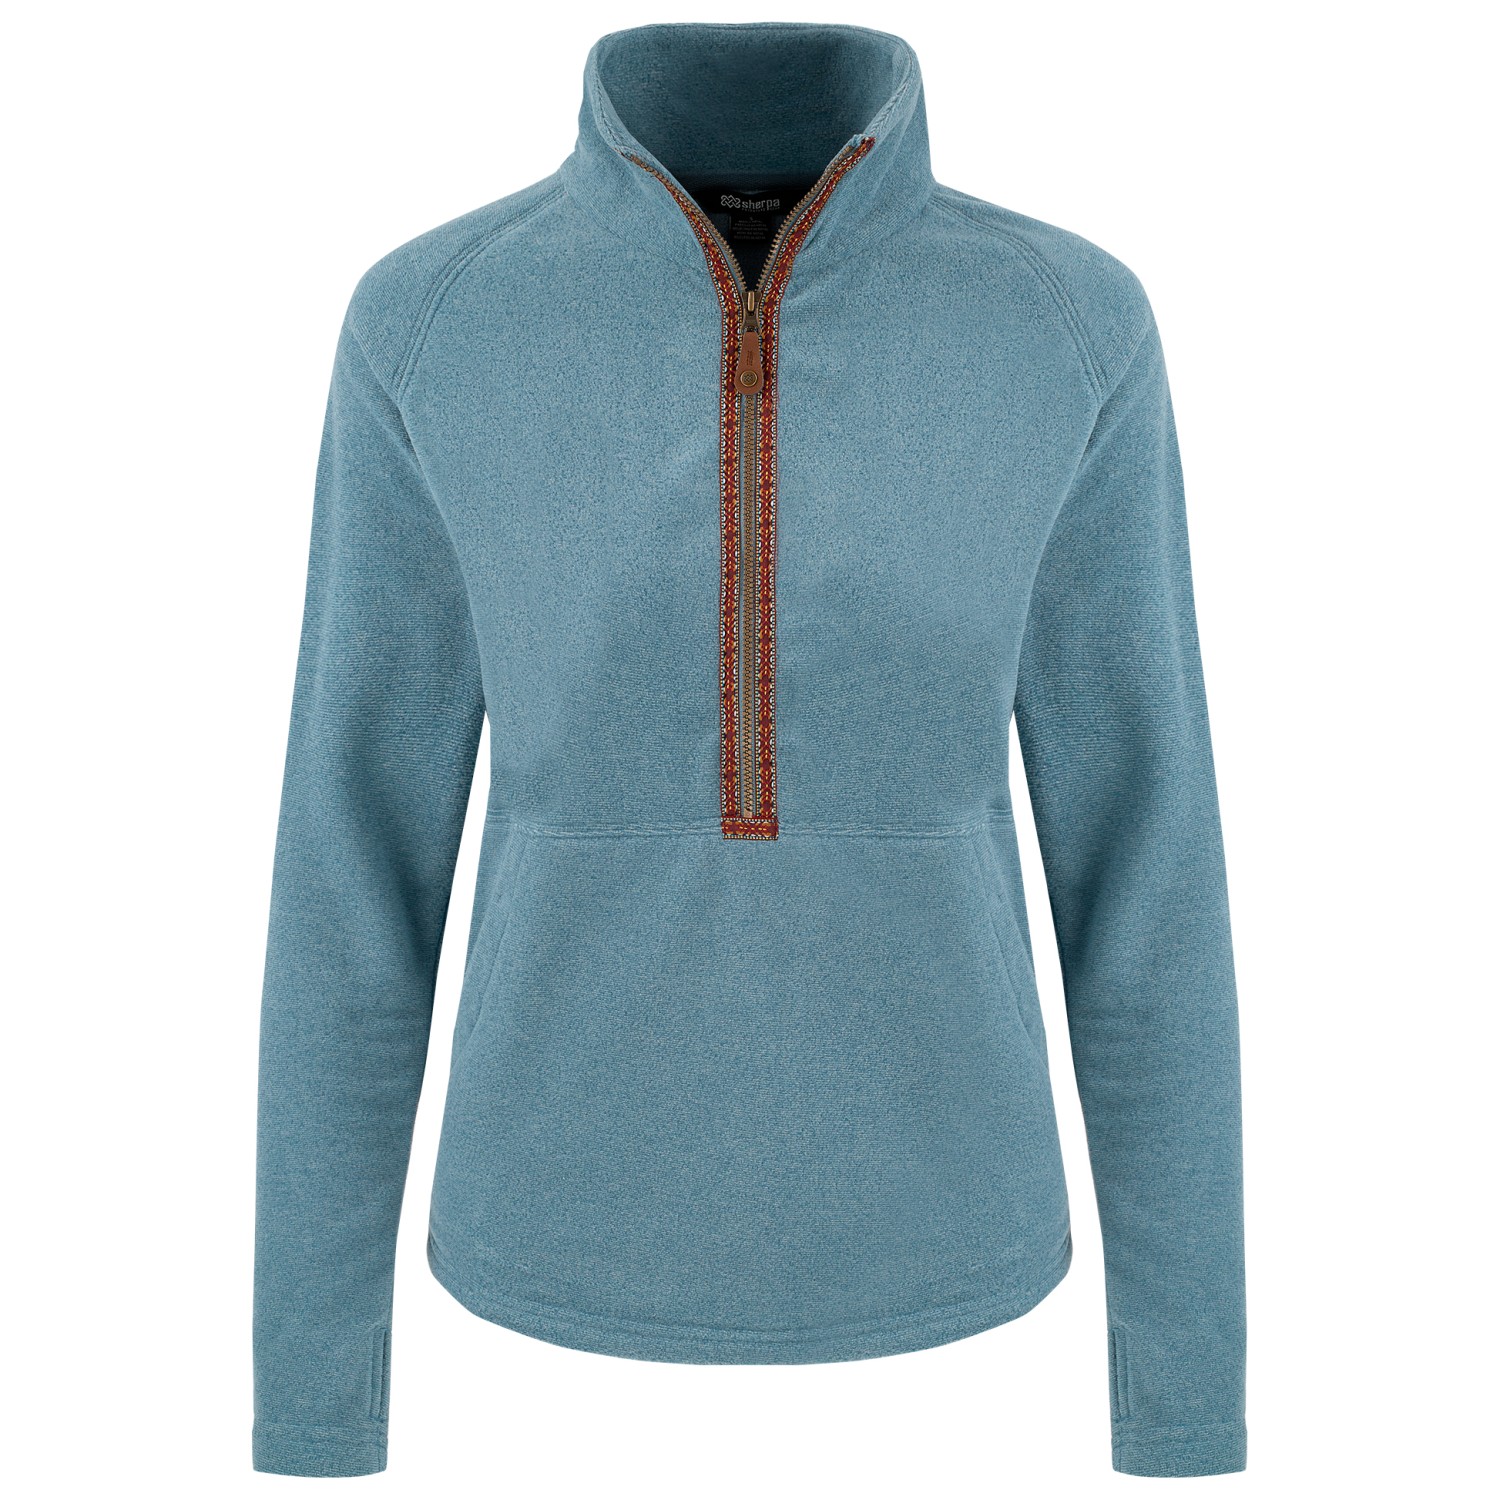 Флисовый свитер Sherpa Women's Rolpa Eco 1/2 Zip, цвет Light Haze